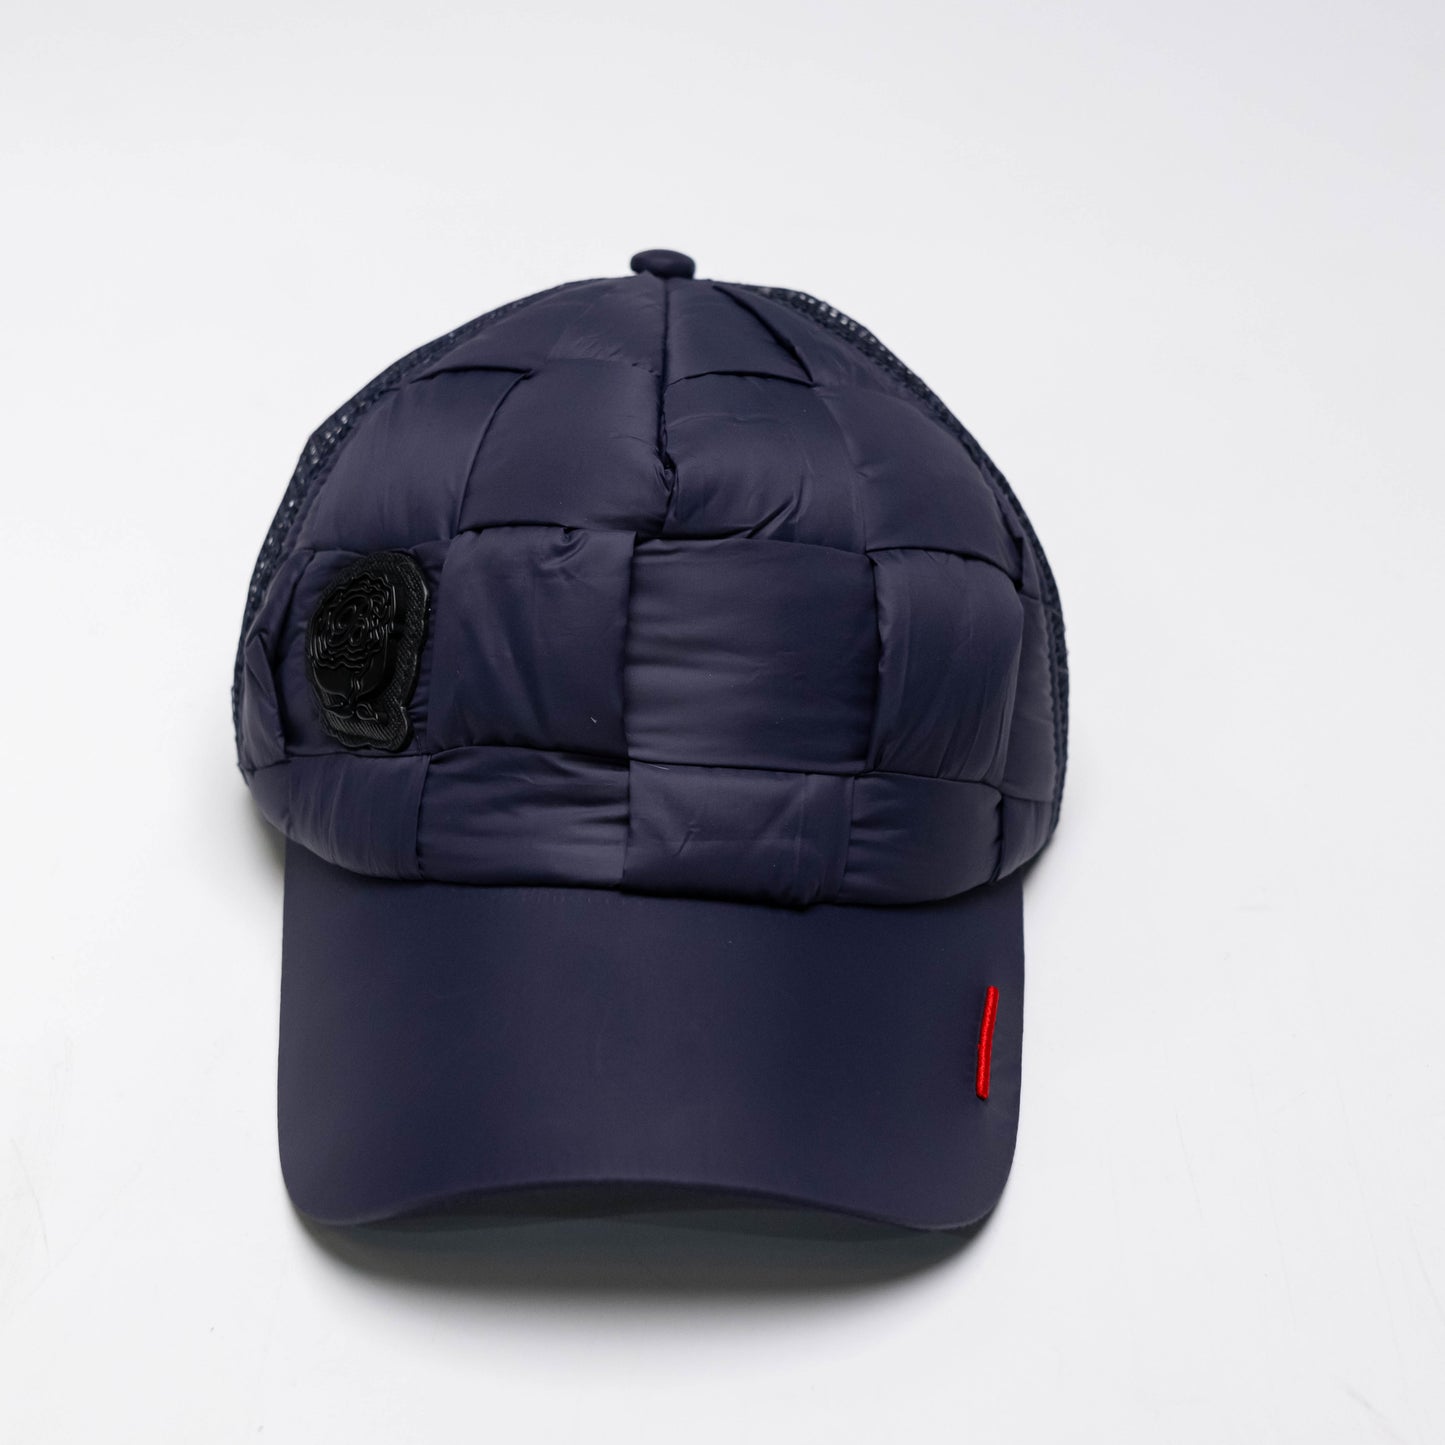 Bogart Premium Collection Quilted Cap